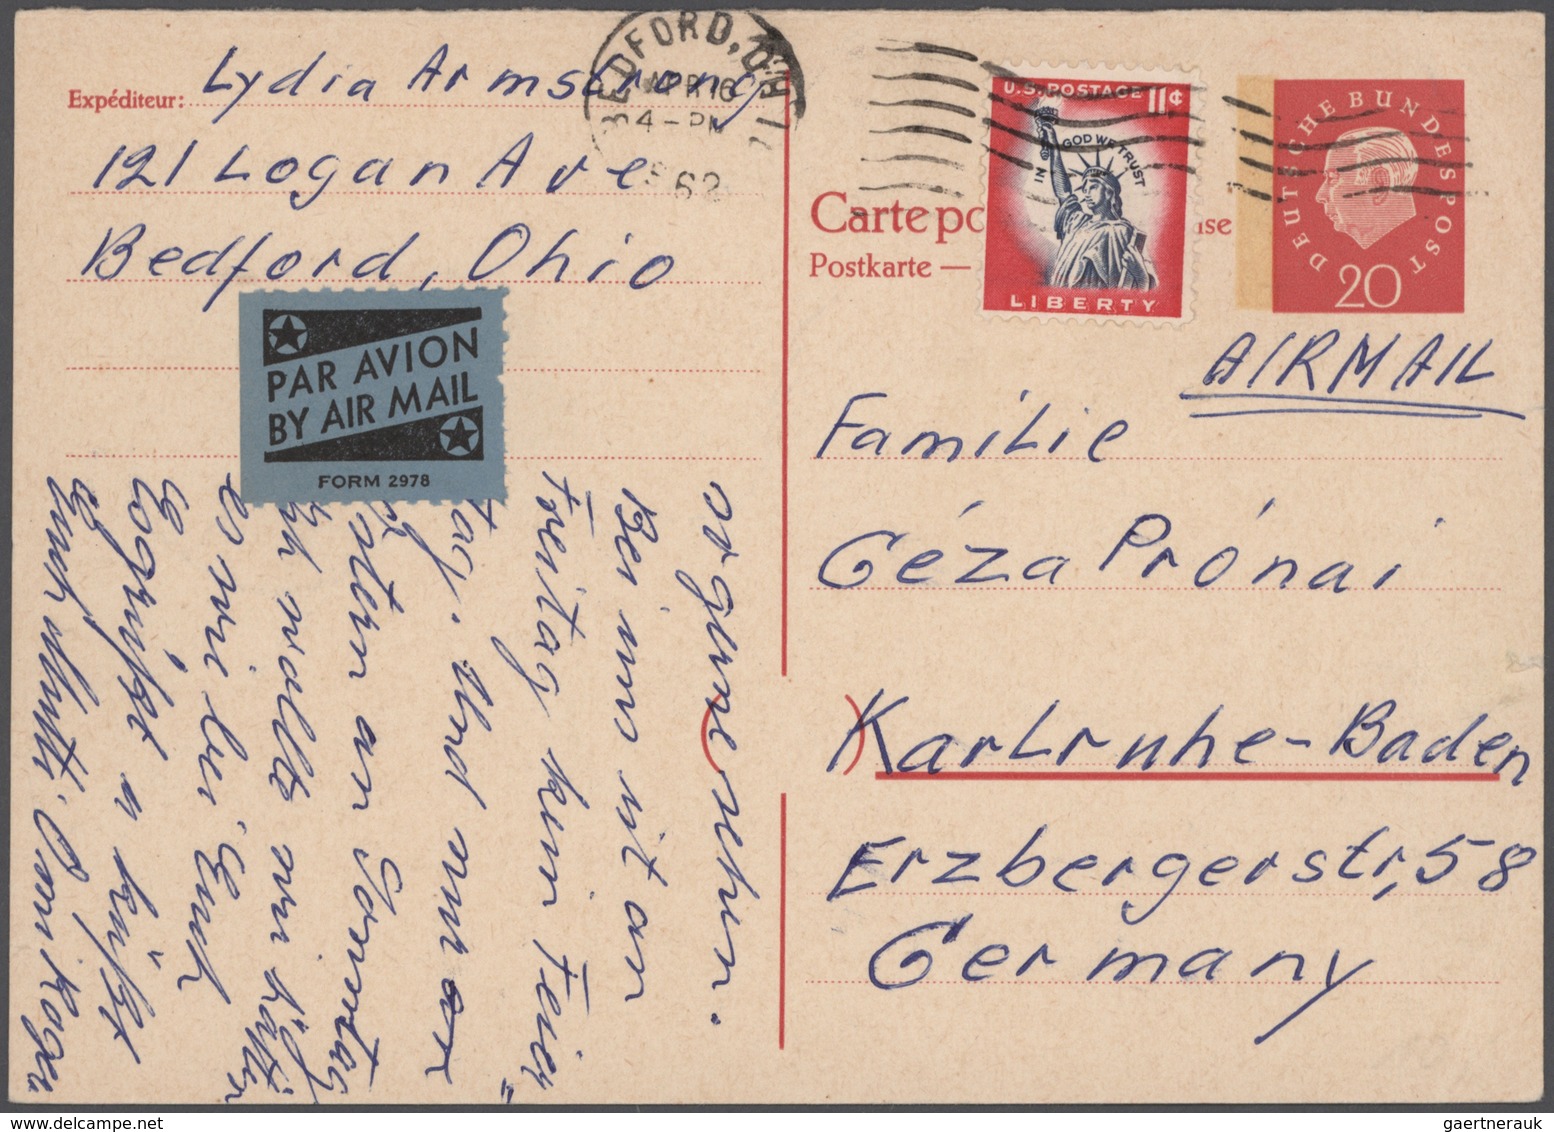 Deutschland: 1900/2000 (ca.), reichhaltiger Sammlungsbestand von einigen hundert gebrauchten und ung